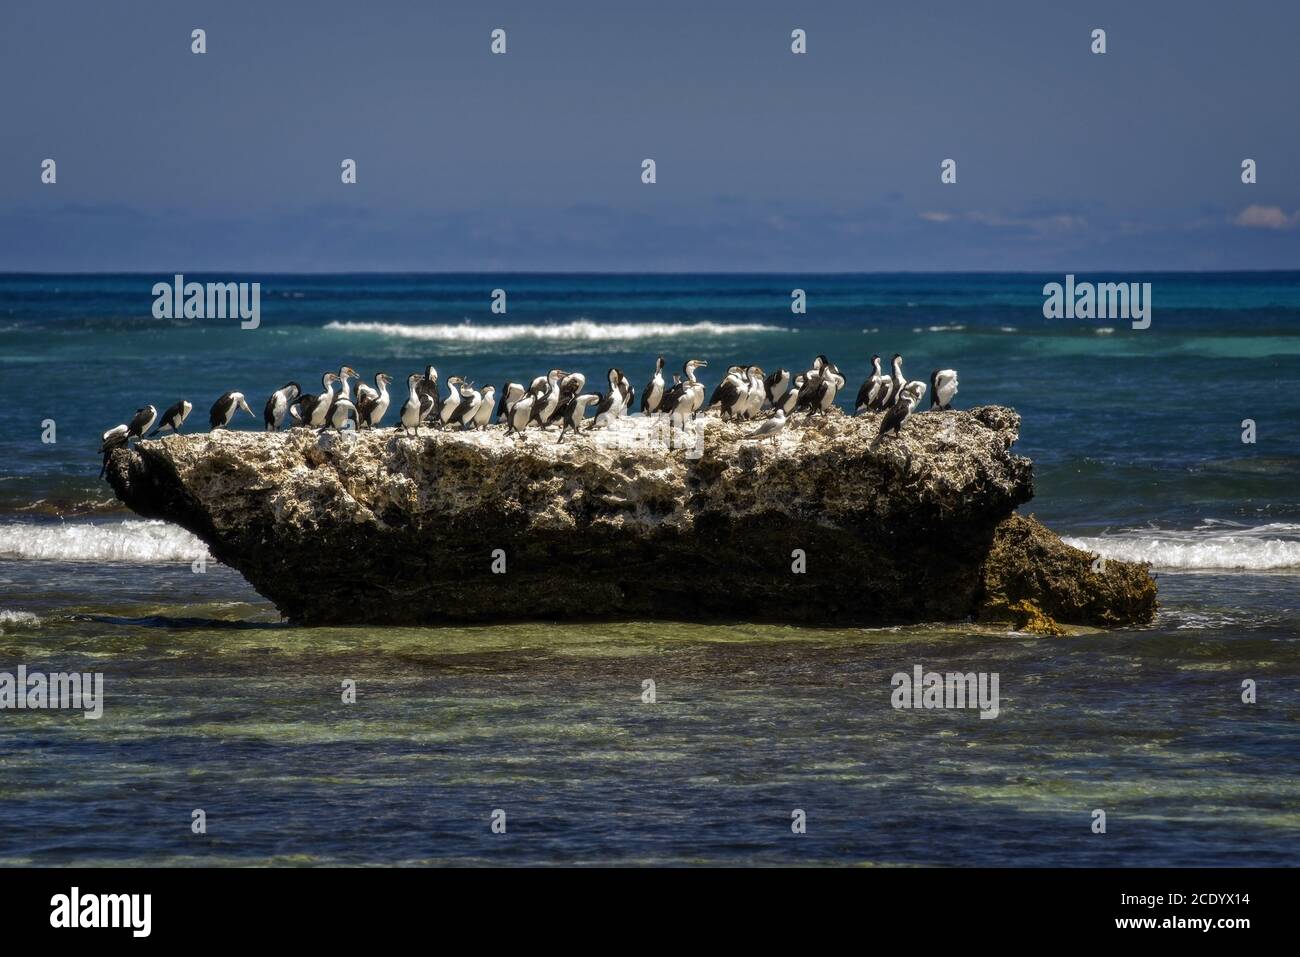 Groupe australien de Pied Cormorant à a Rock in the Ocean – Australie occidentale Banque D'Images